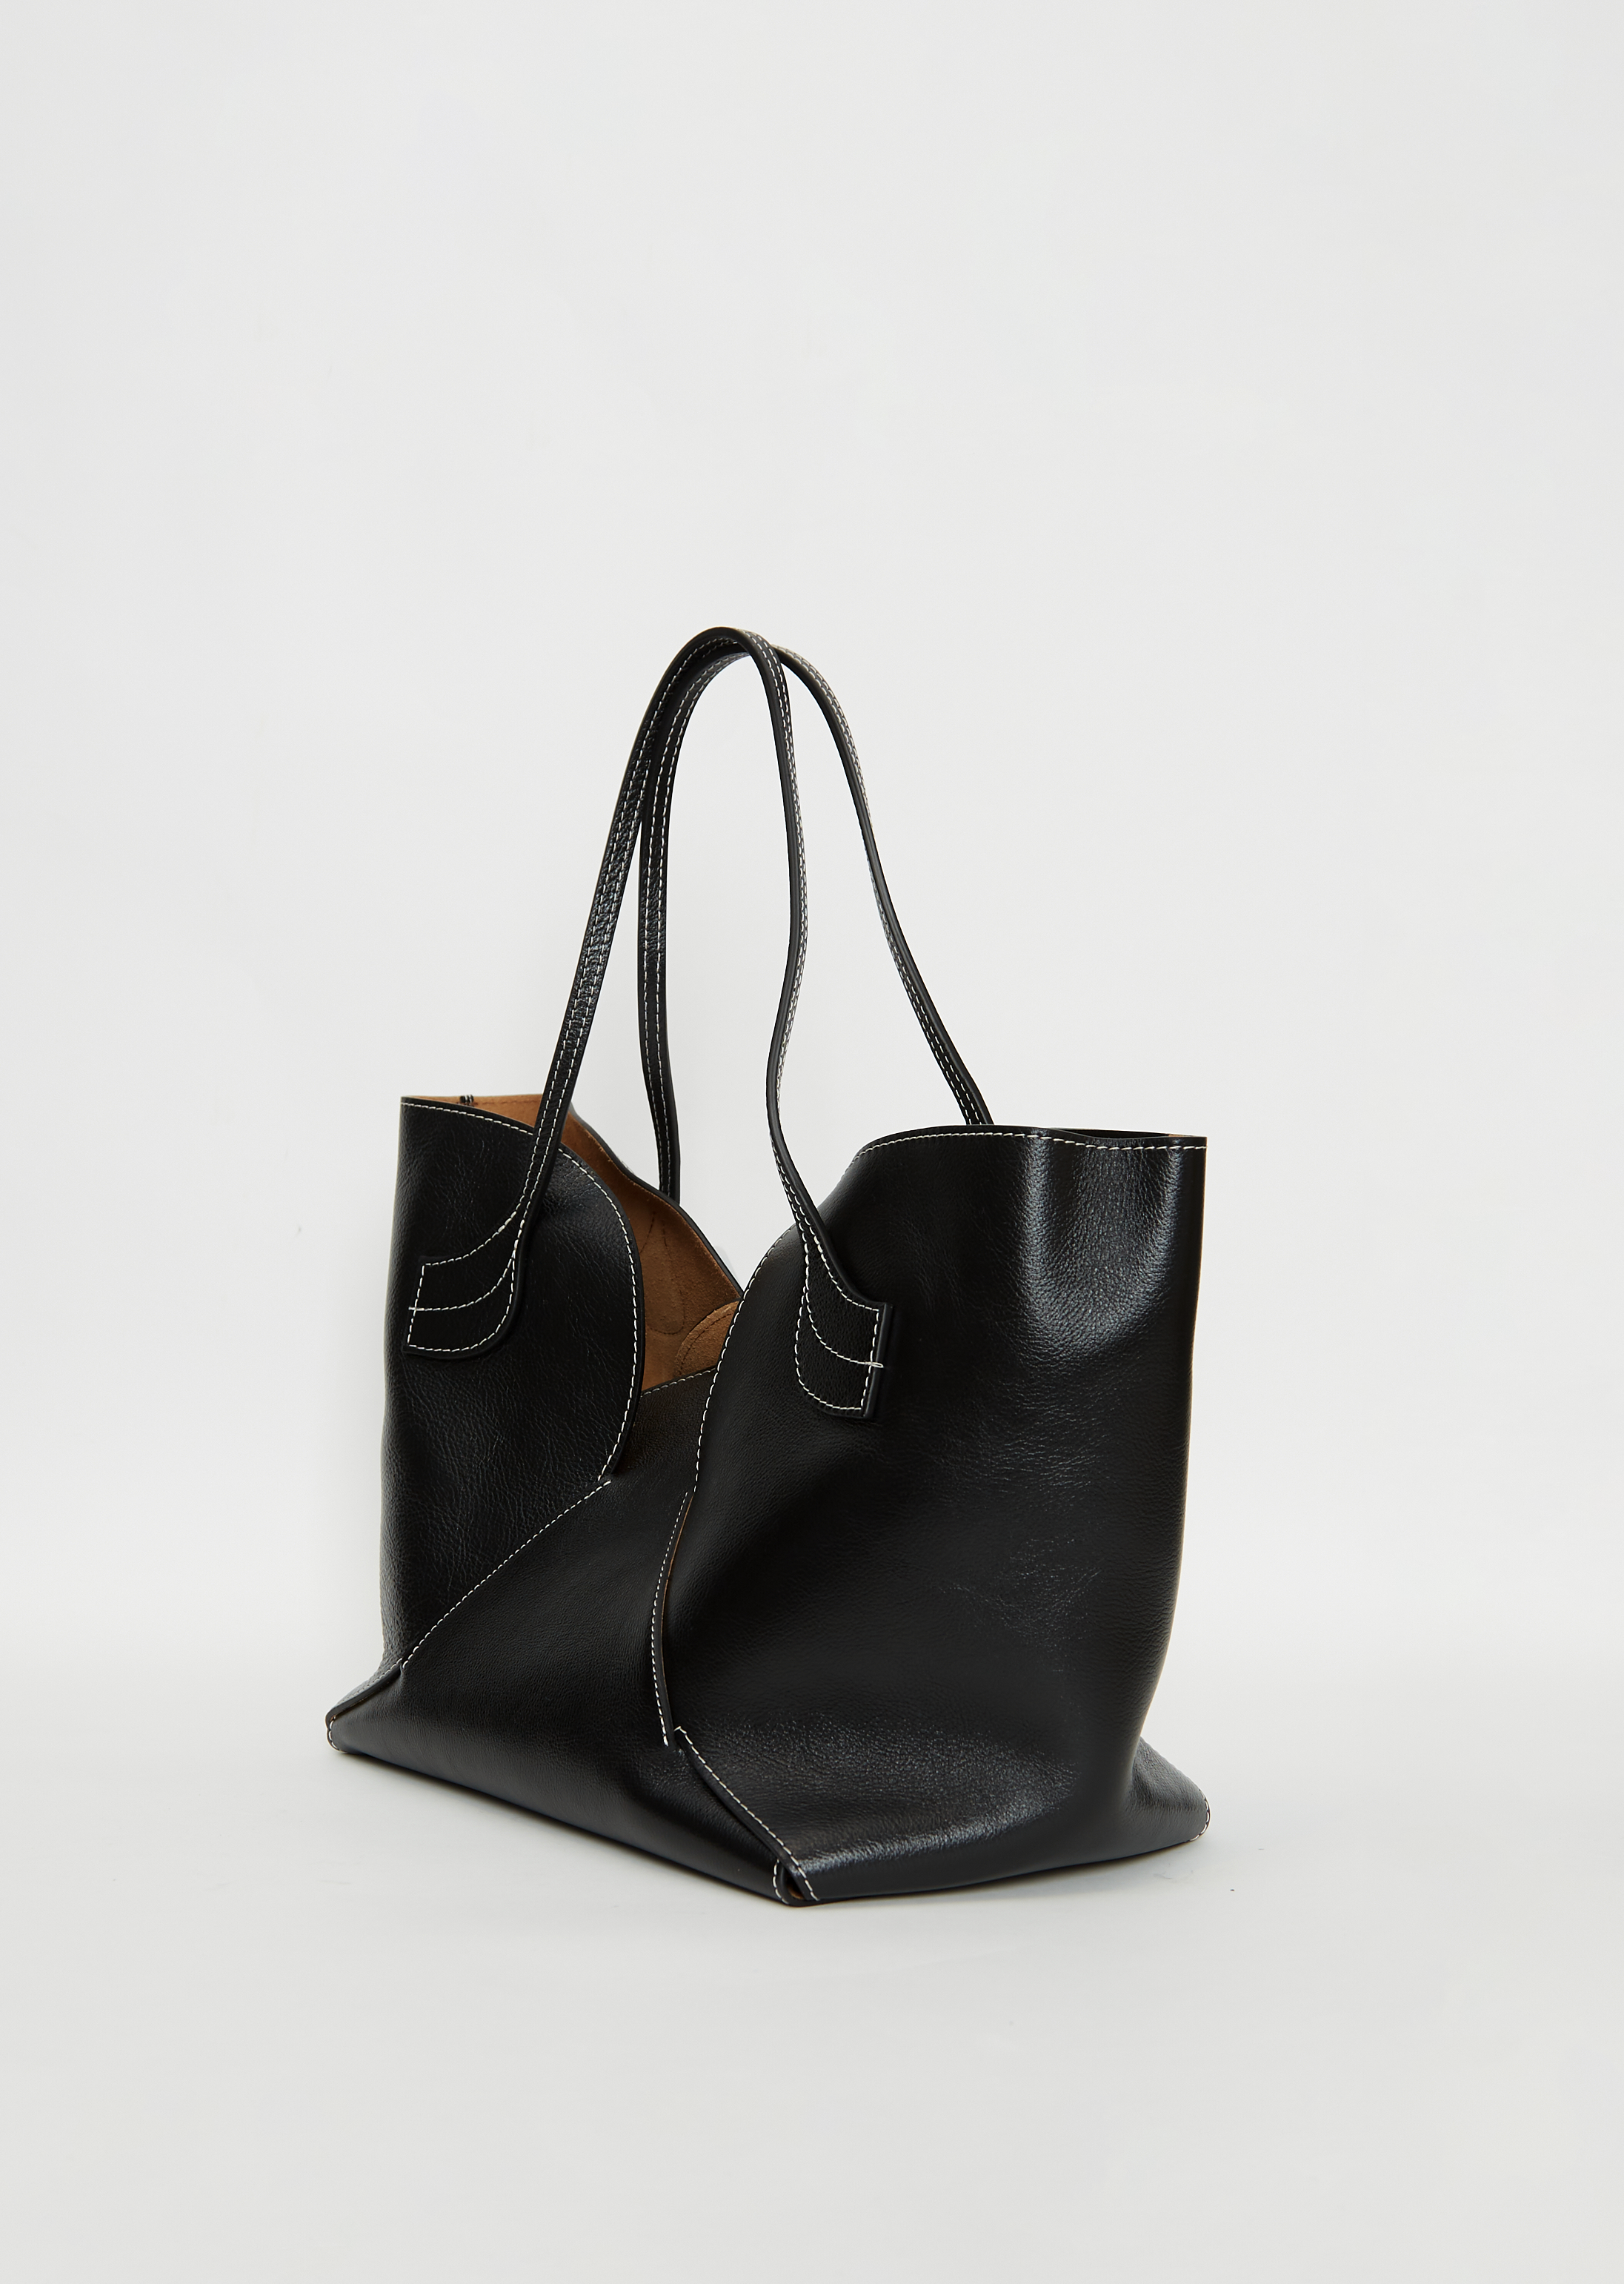 SEPAL S - Tulip Shape Tote Bag – Hereu Studio